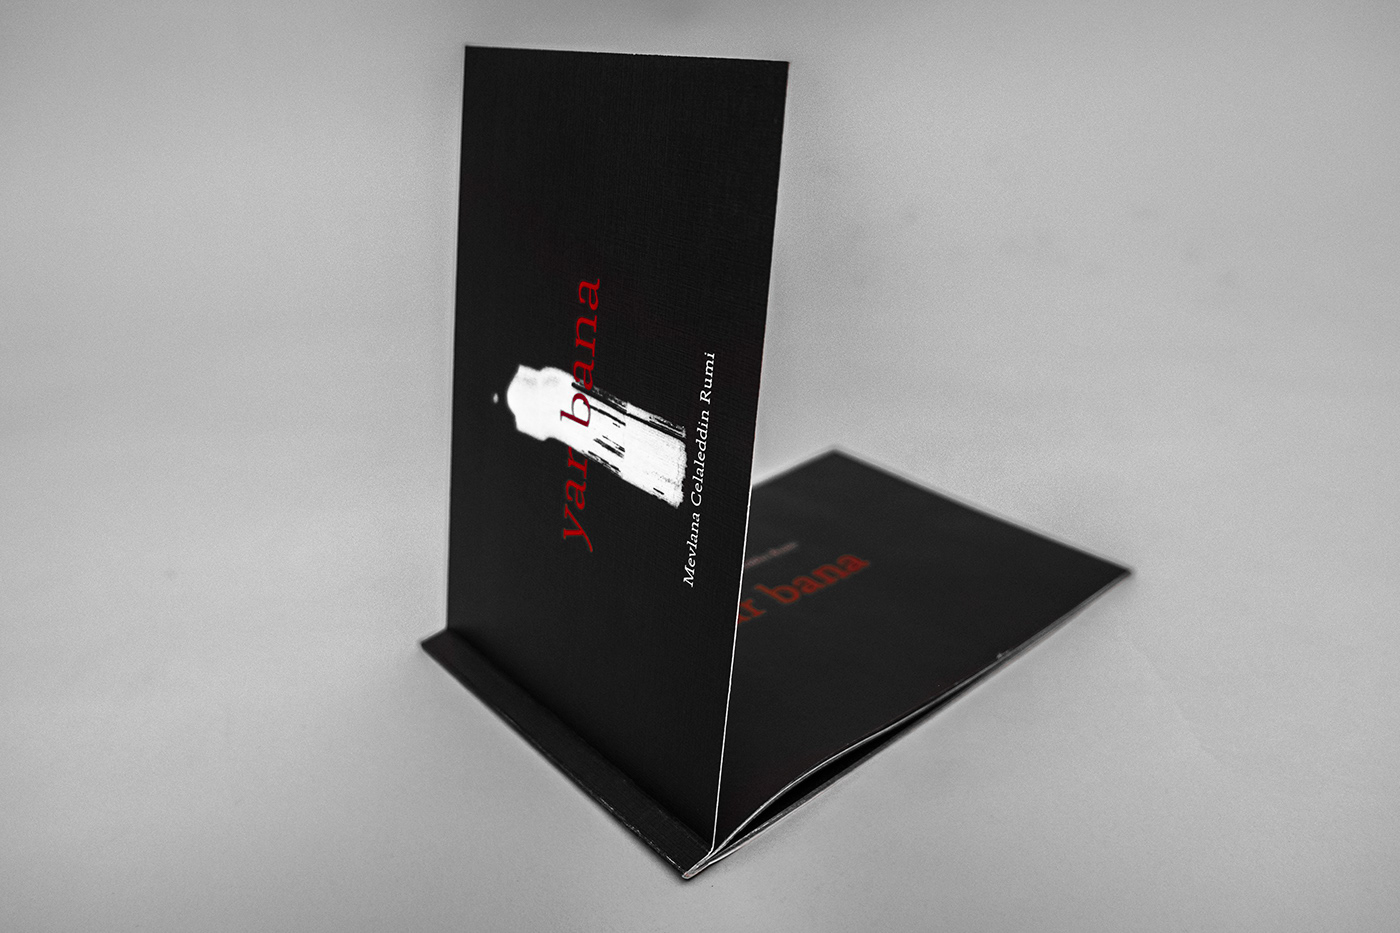 Şiir Kitabı poetry book design book design Mevlana kitap tasarımı